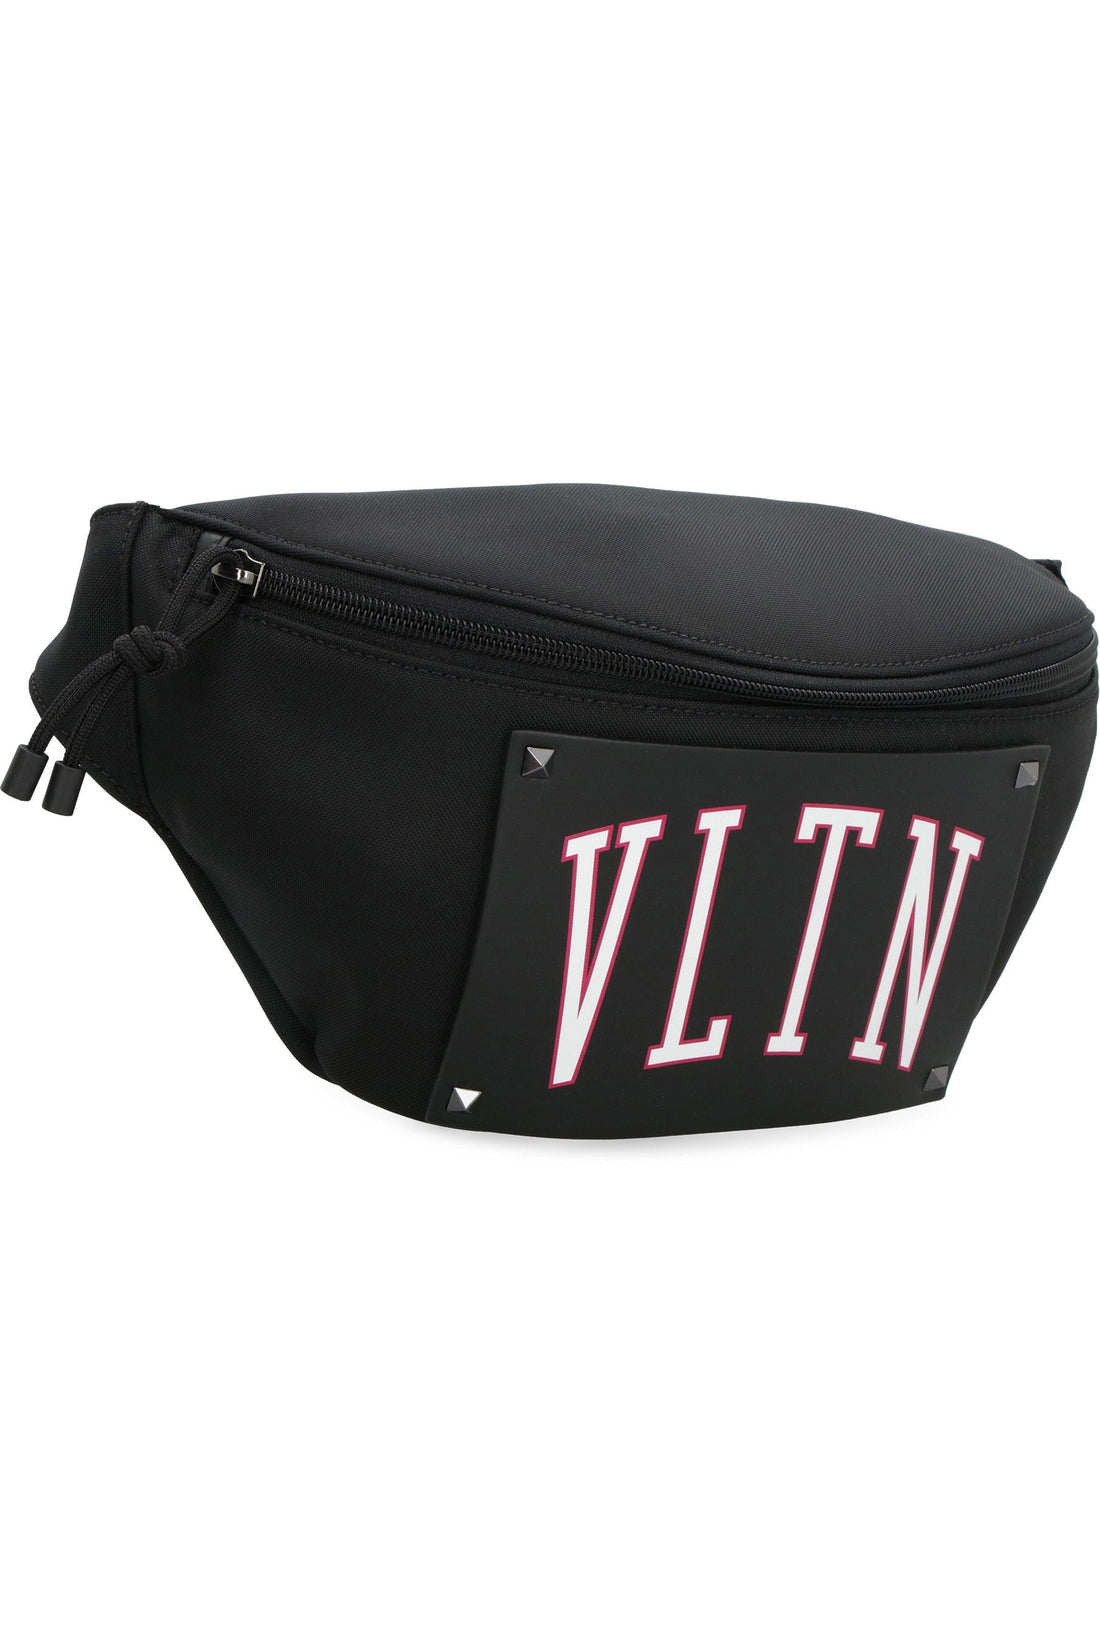 Valentino-OUTLET-SALE-Valentino Garavani - VLTN nylon belt bag-ARCHIVIST